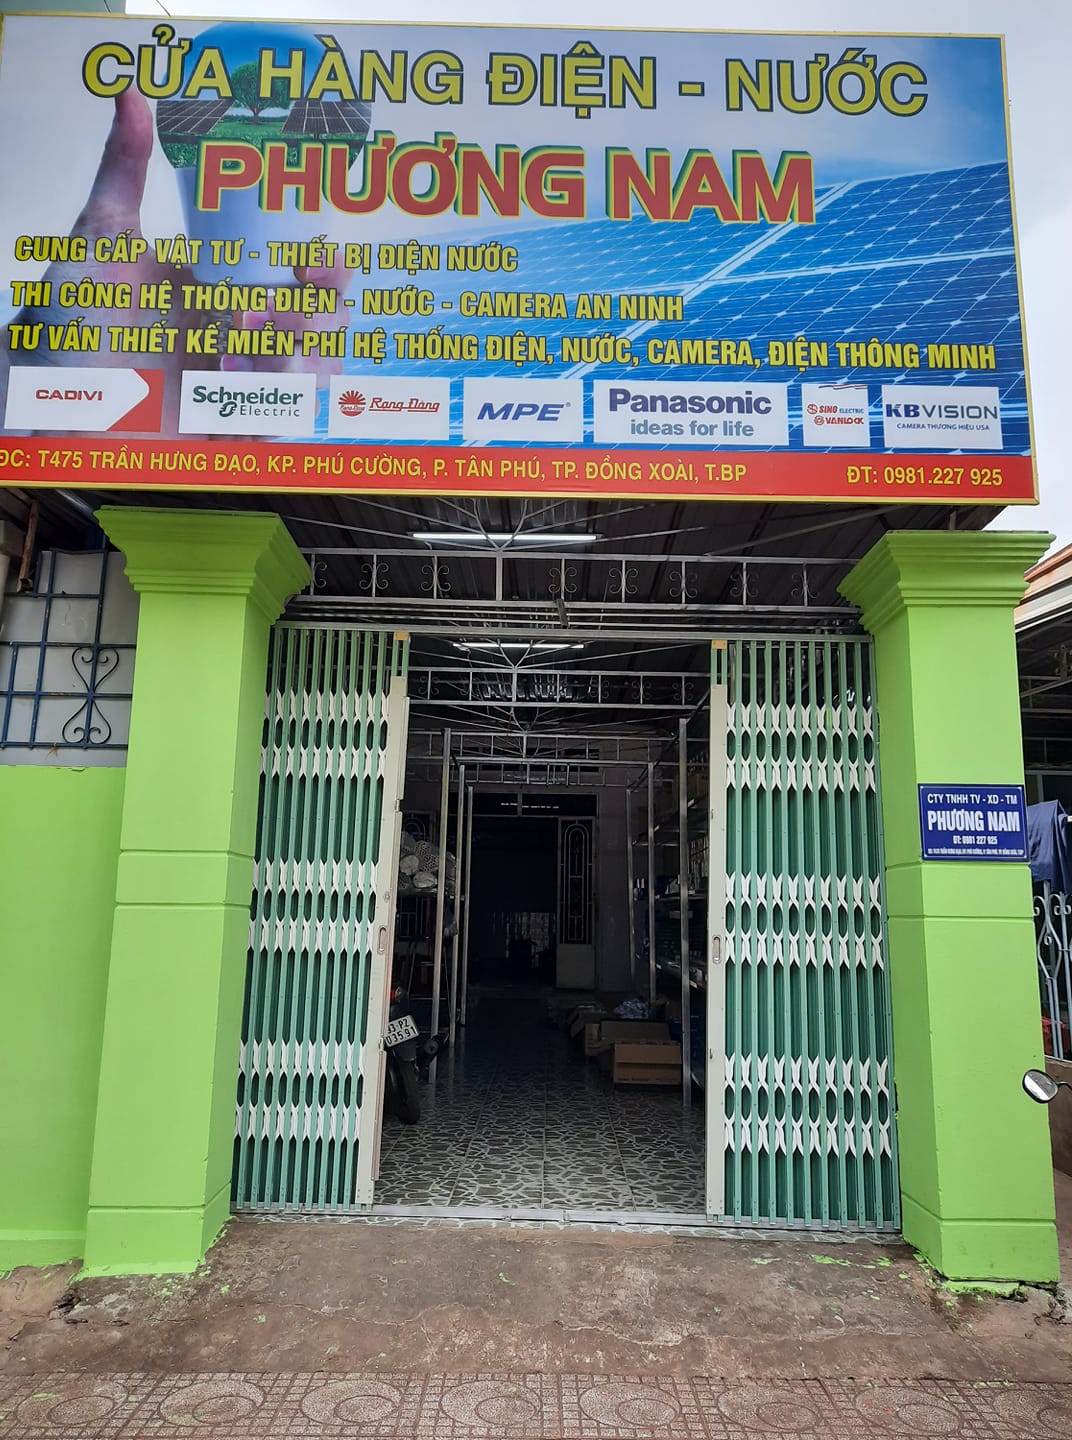 Cửa hàng điện nước camera Phương Nam